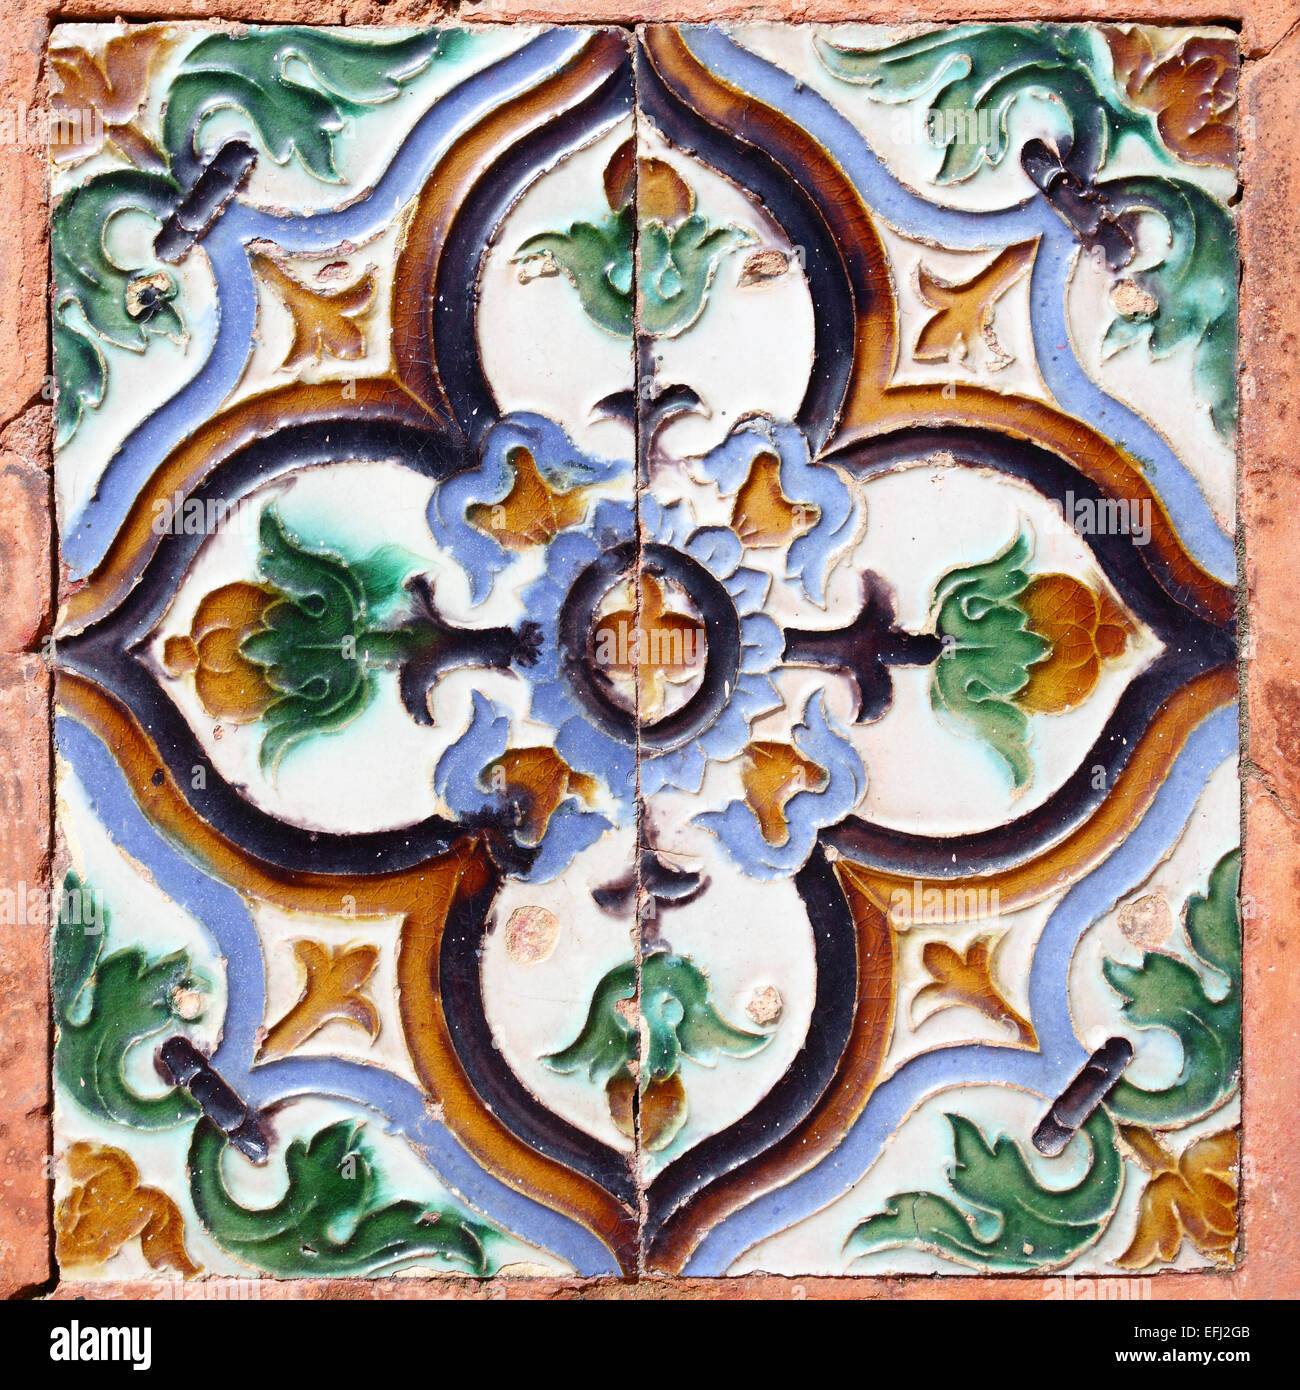 Les carreaux de céramique mauresque dans l'Alcazar de Séville, Banque D'Images